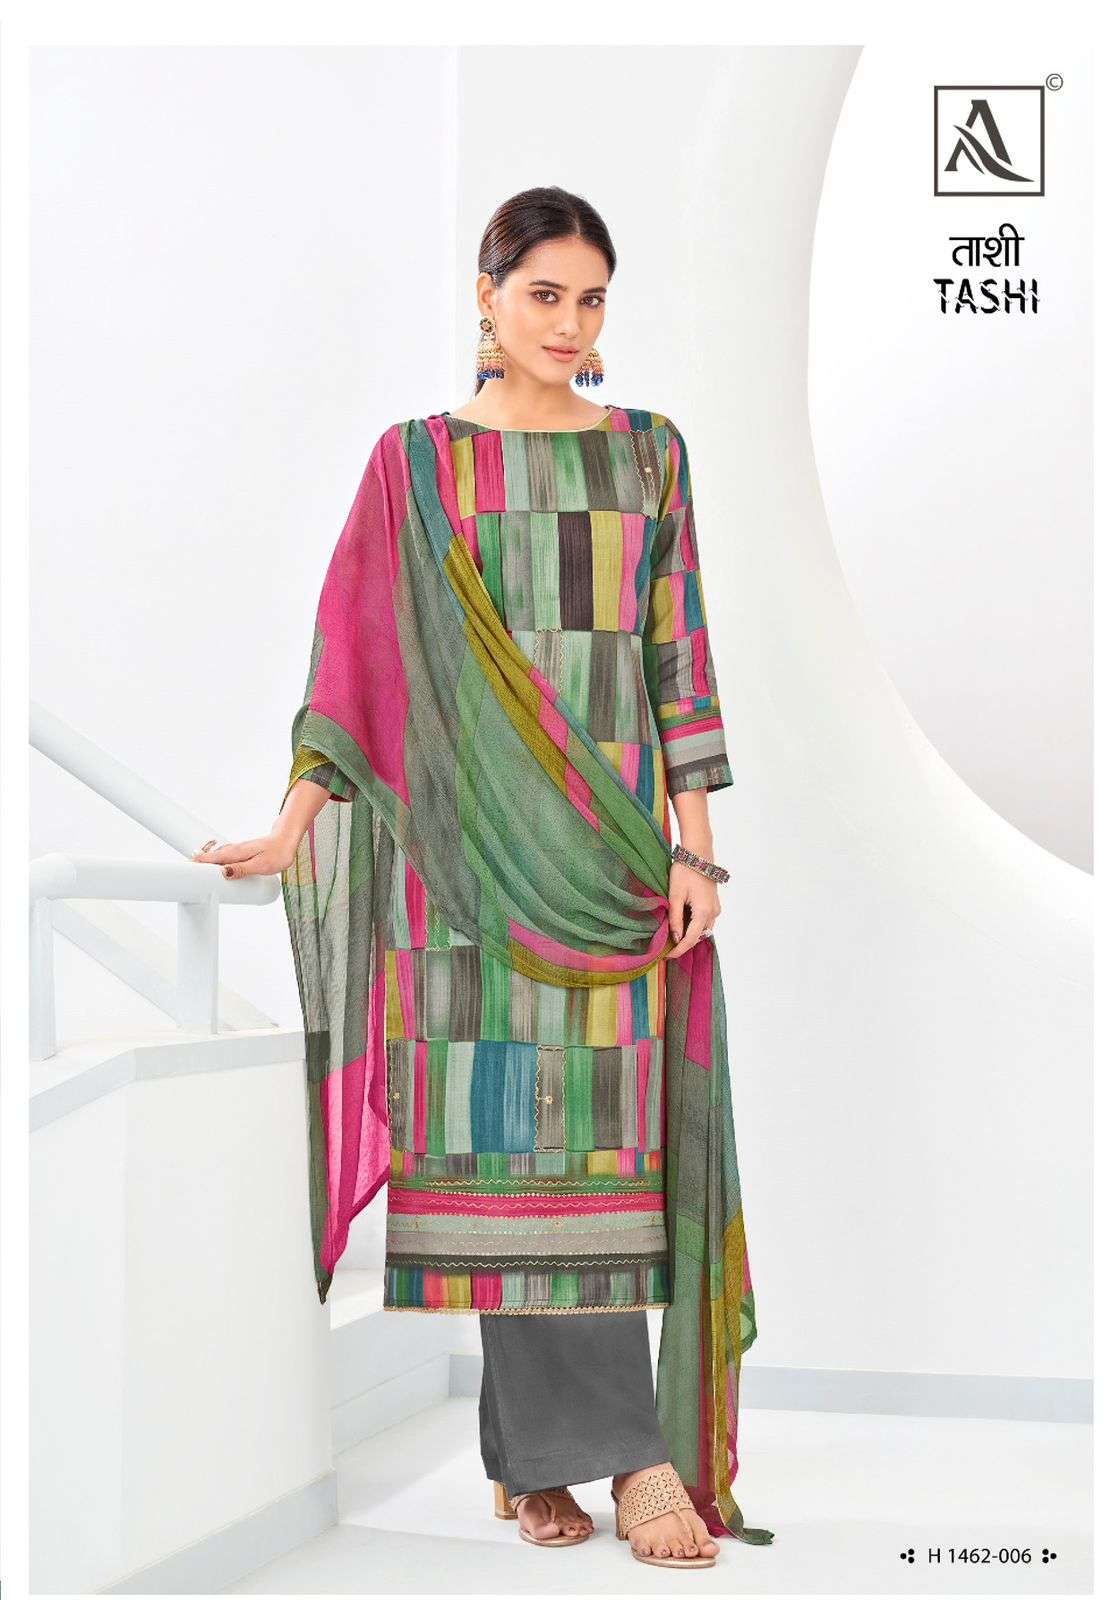 alok suit tashi Premium cotton elegant look salwar suit catalog